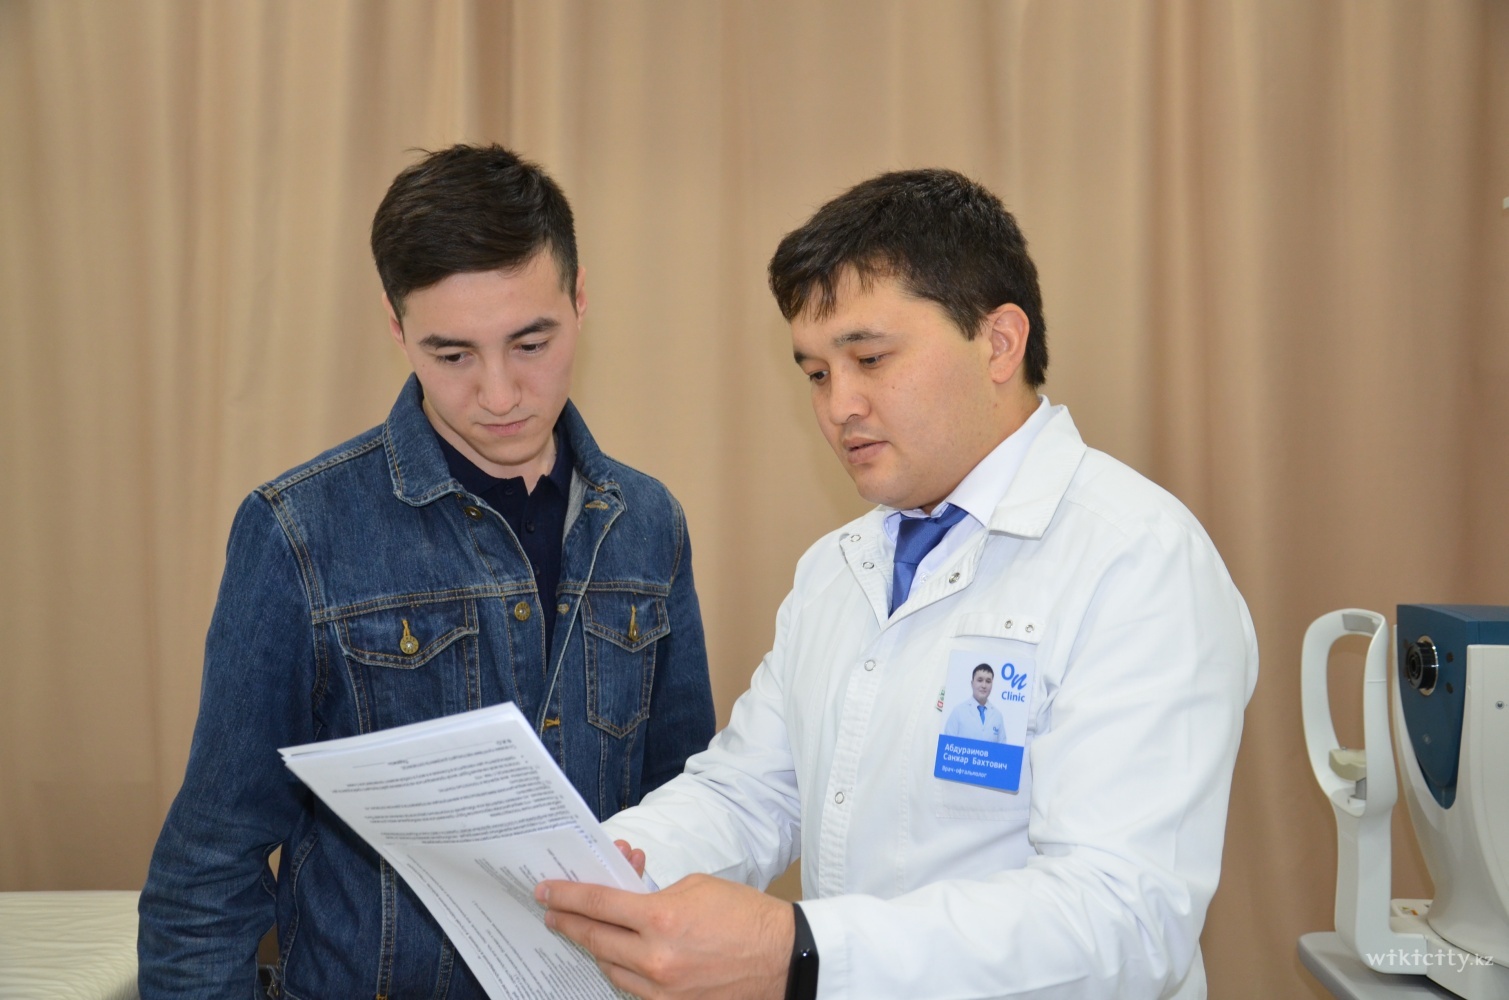 Фото On Clinic - Almaty. Врач-офтальмолог Абдураимов Санжар Бахтович во время консультации с пациентом